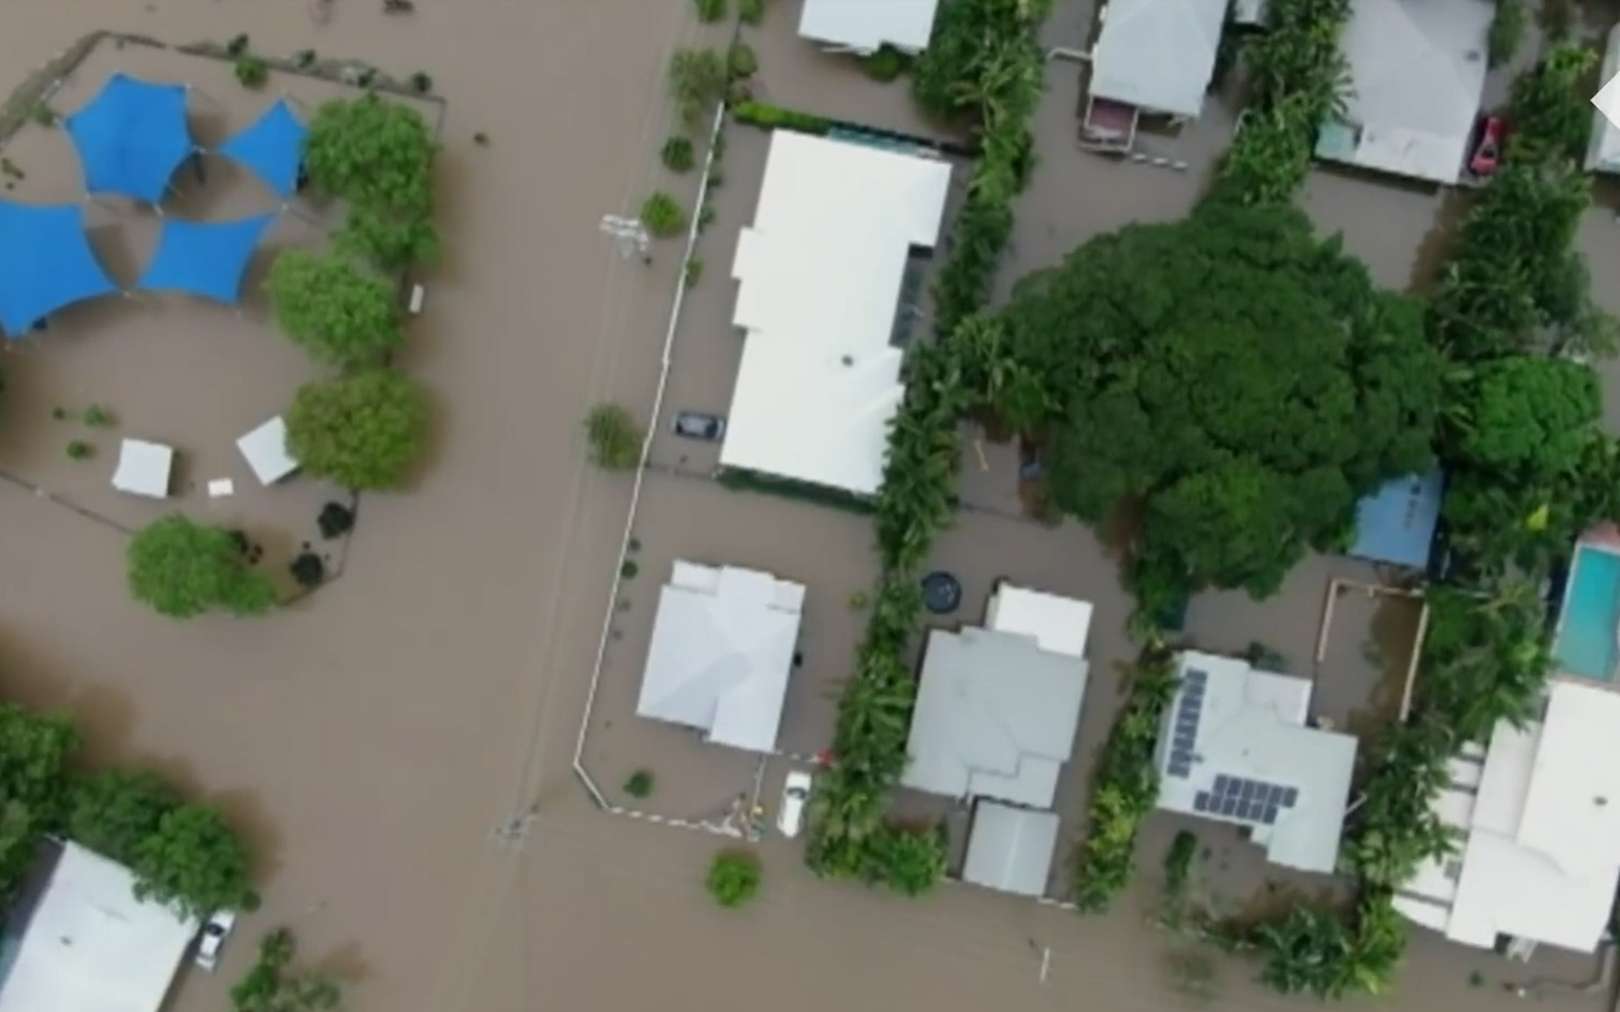 Australie : après la sécheresse, des pluies torrentielles